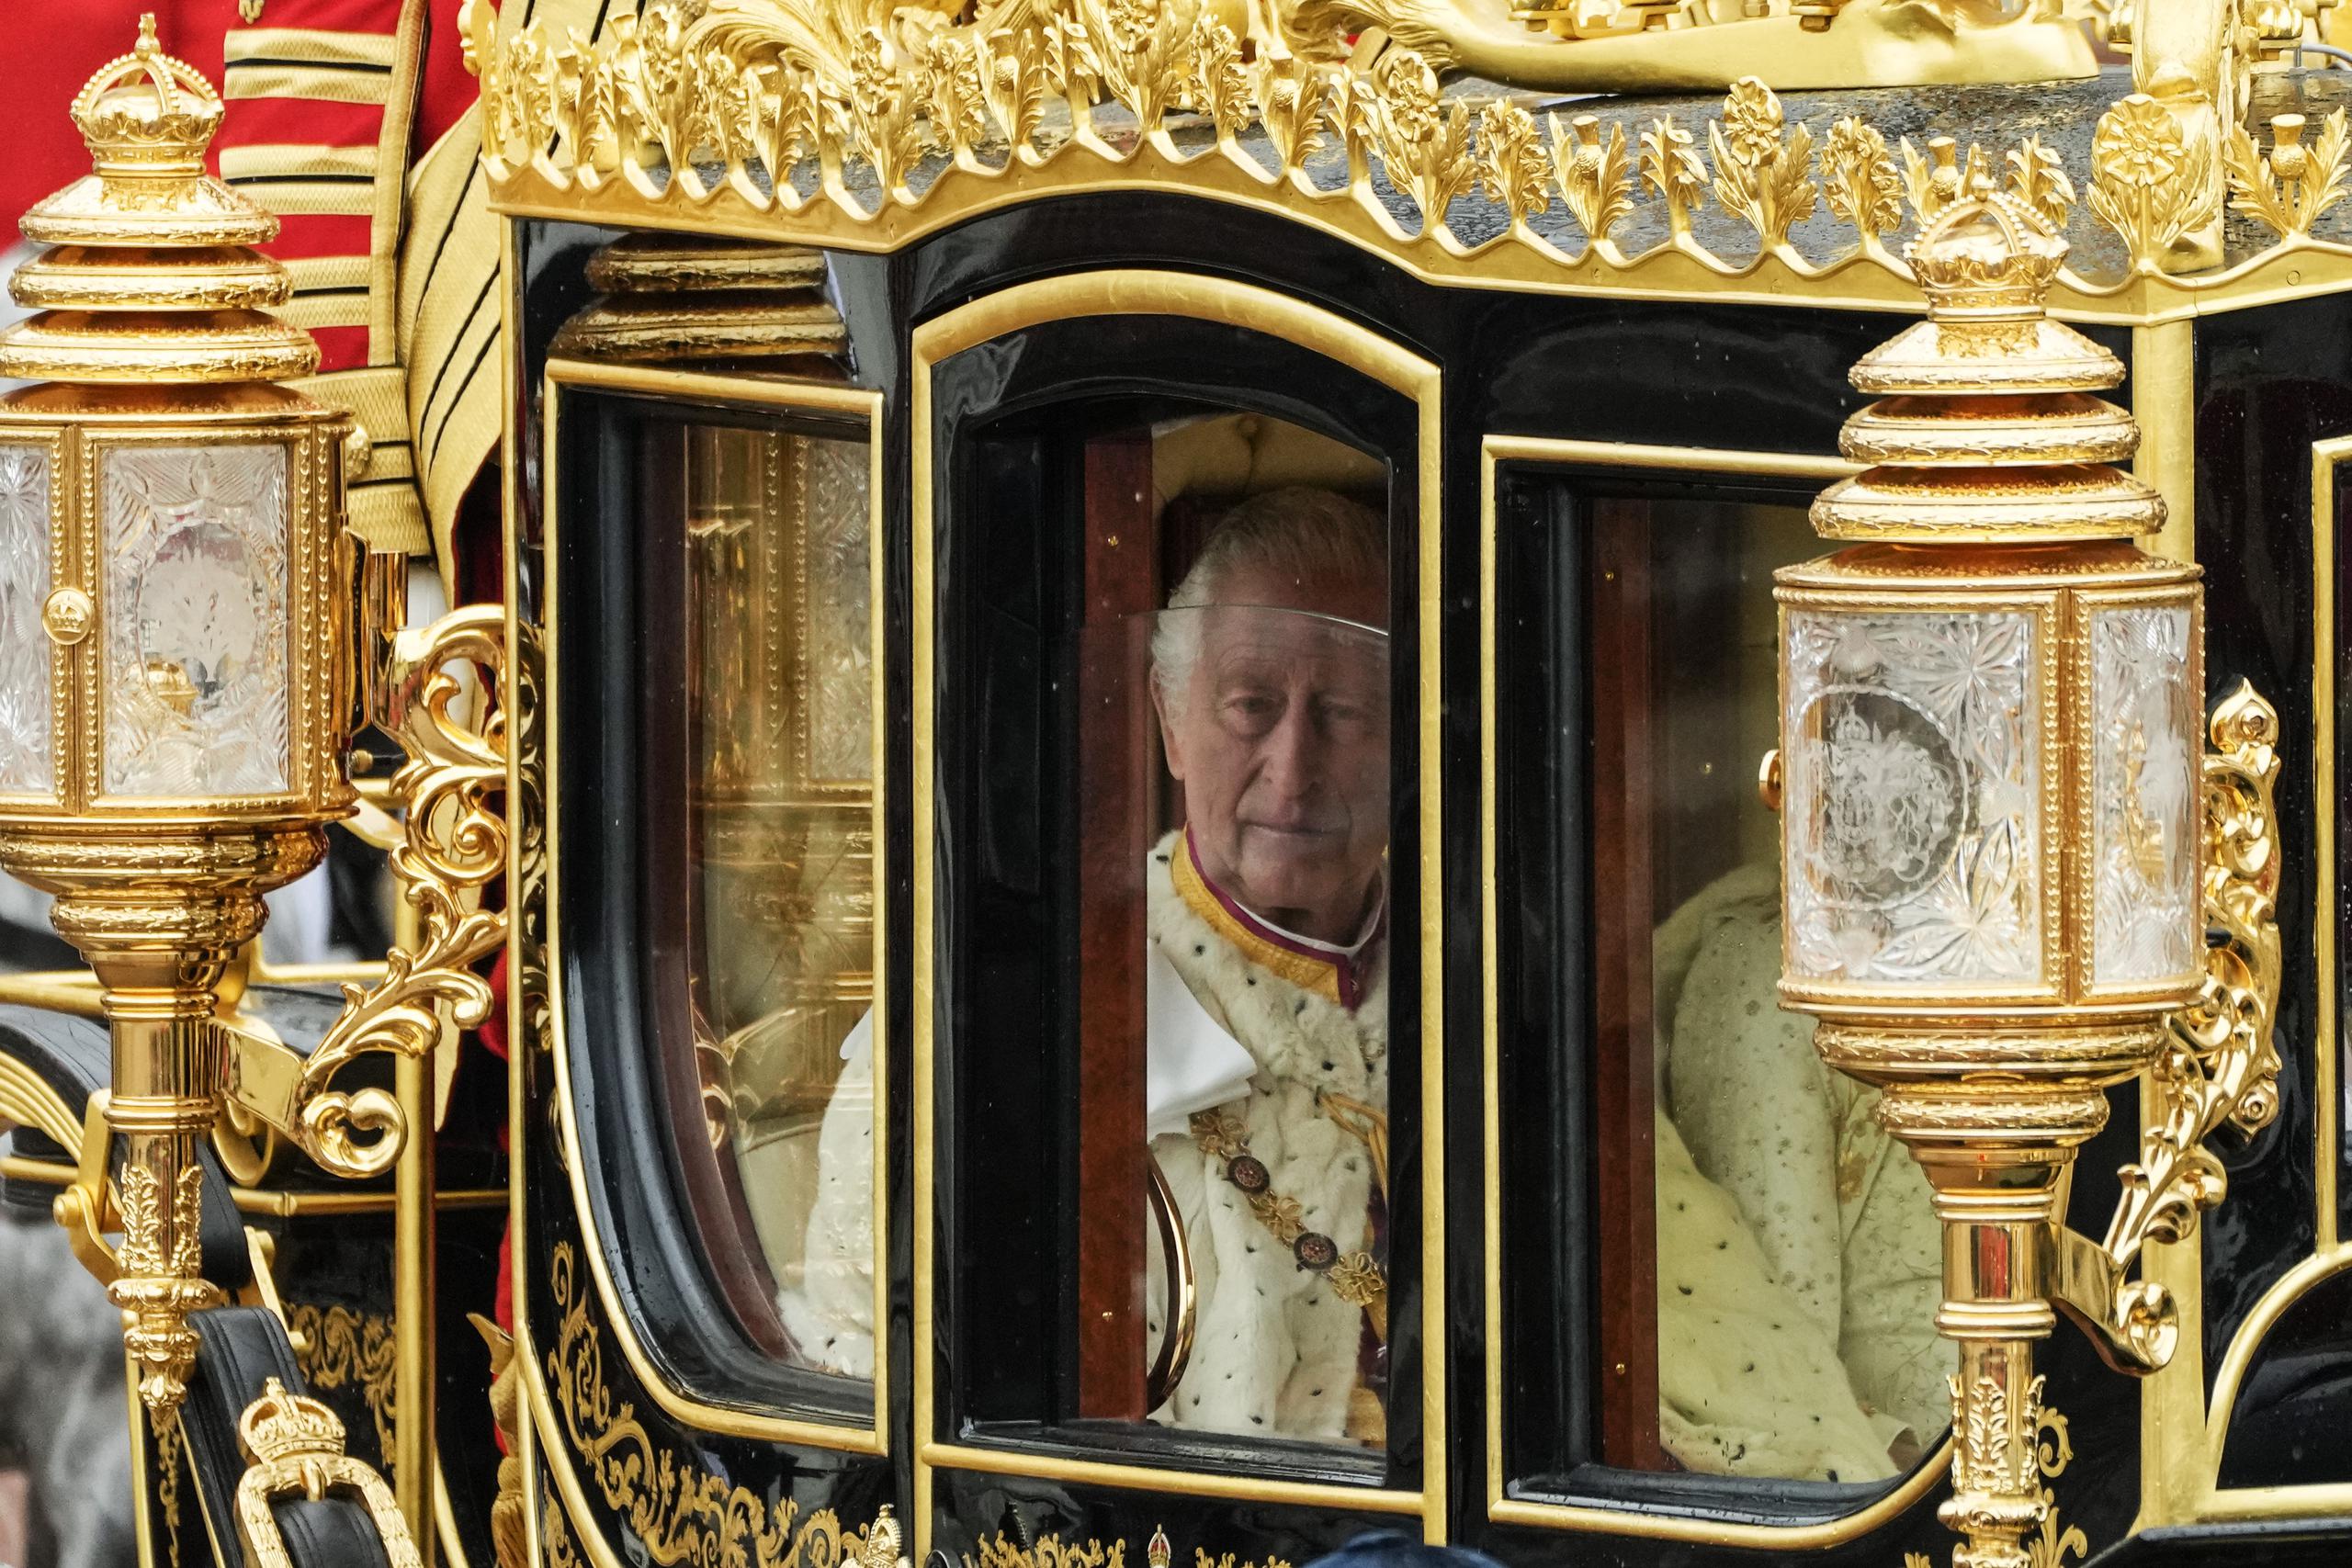 La ceremonia comenzó con el traslado del rey Carlos III del Palacio de Buckingham a la Ambadía de Westminster sobre el imponente carruaje del Jubileo de Diamantes.